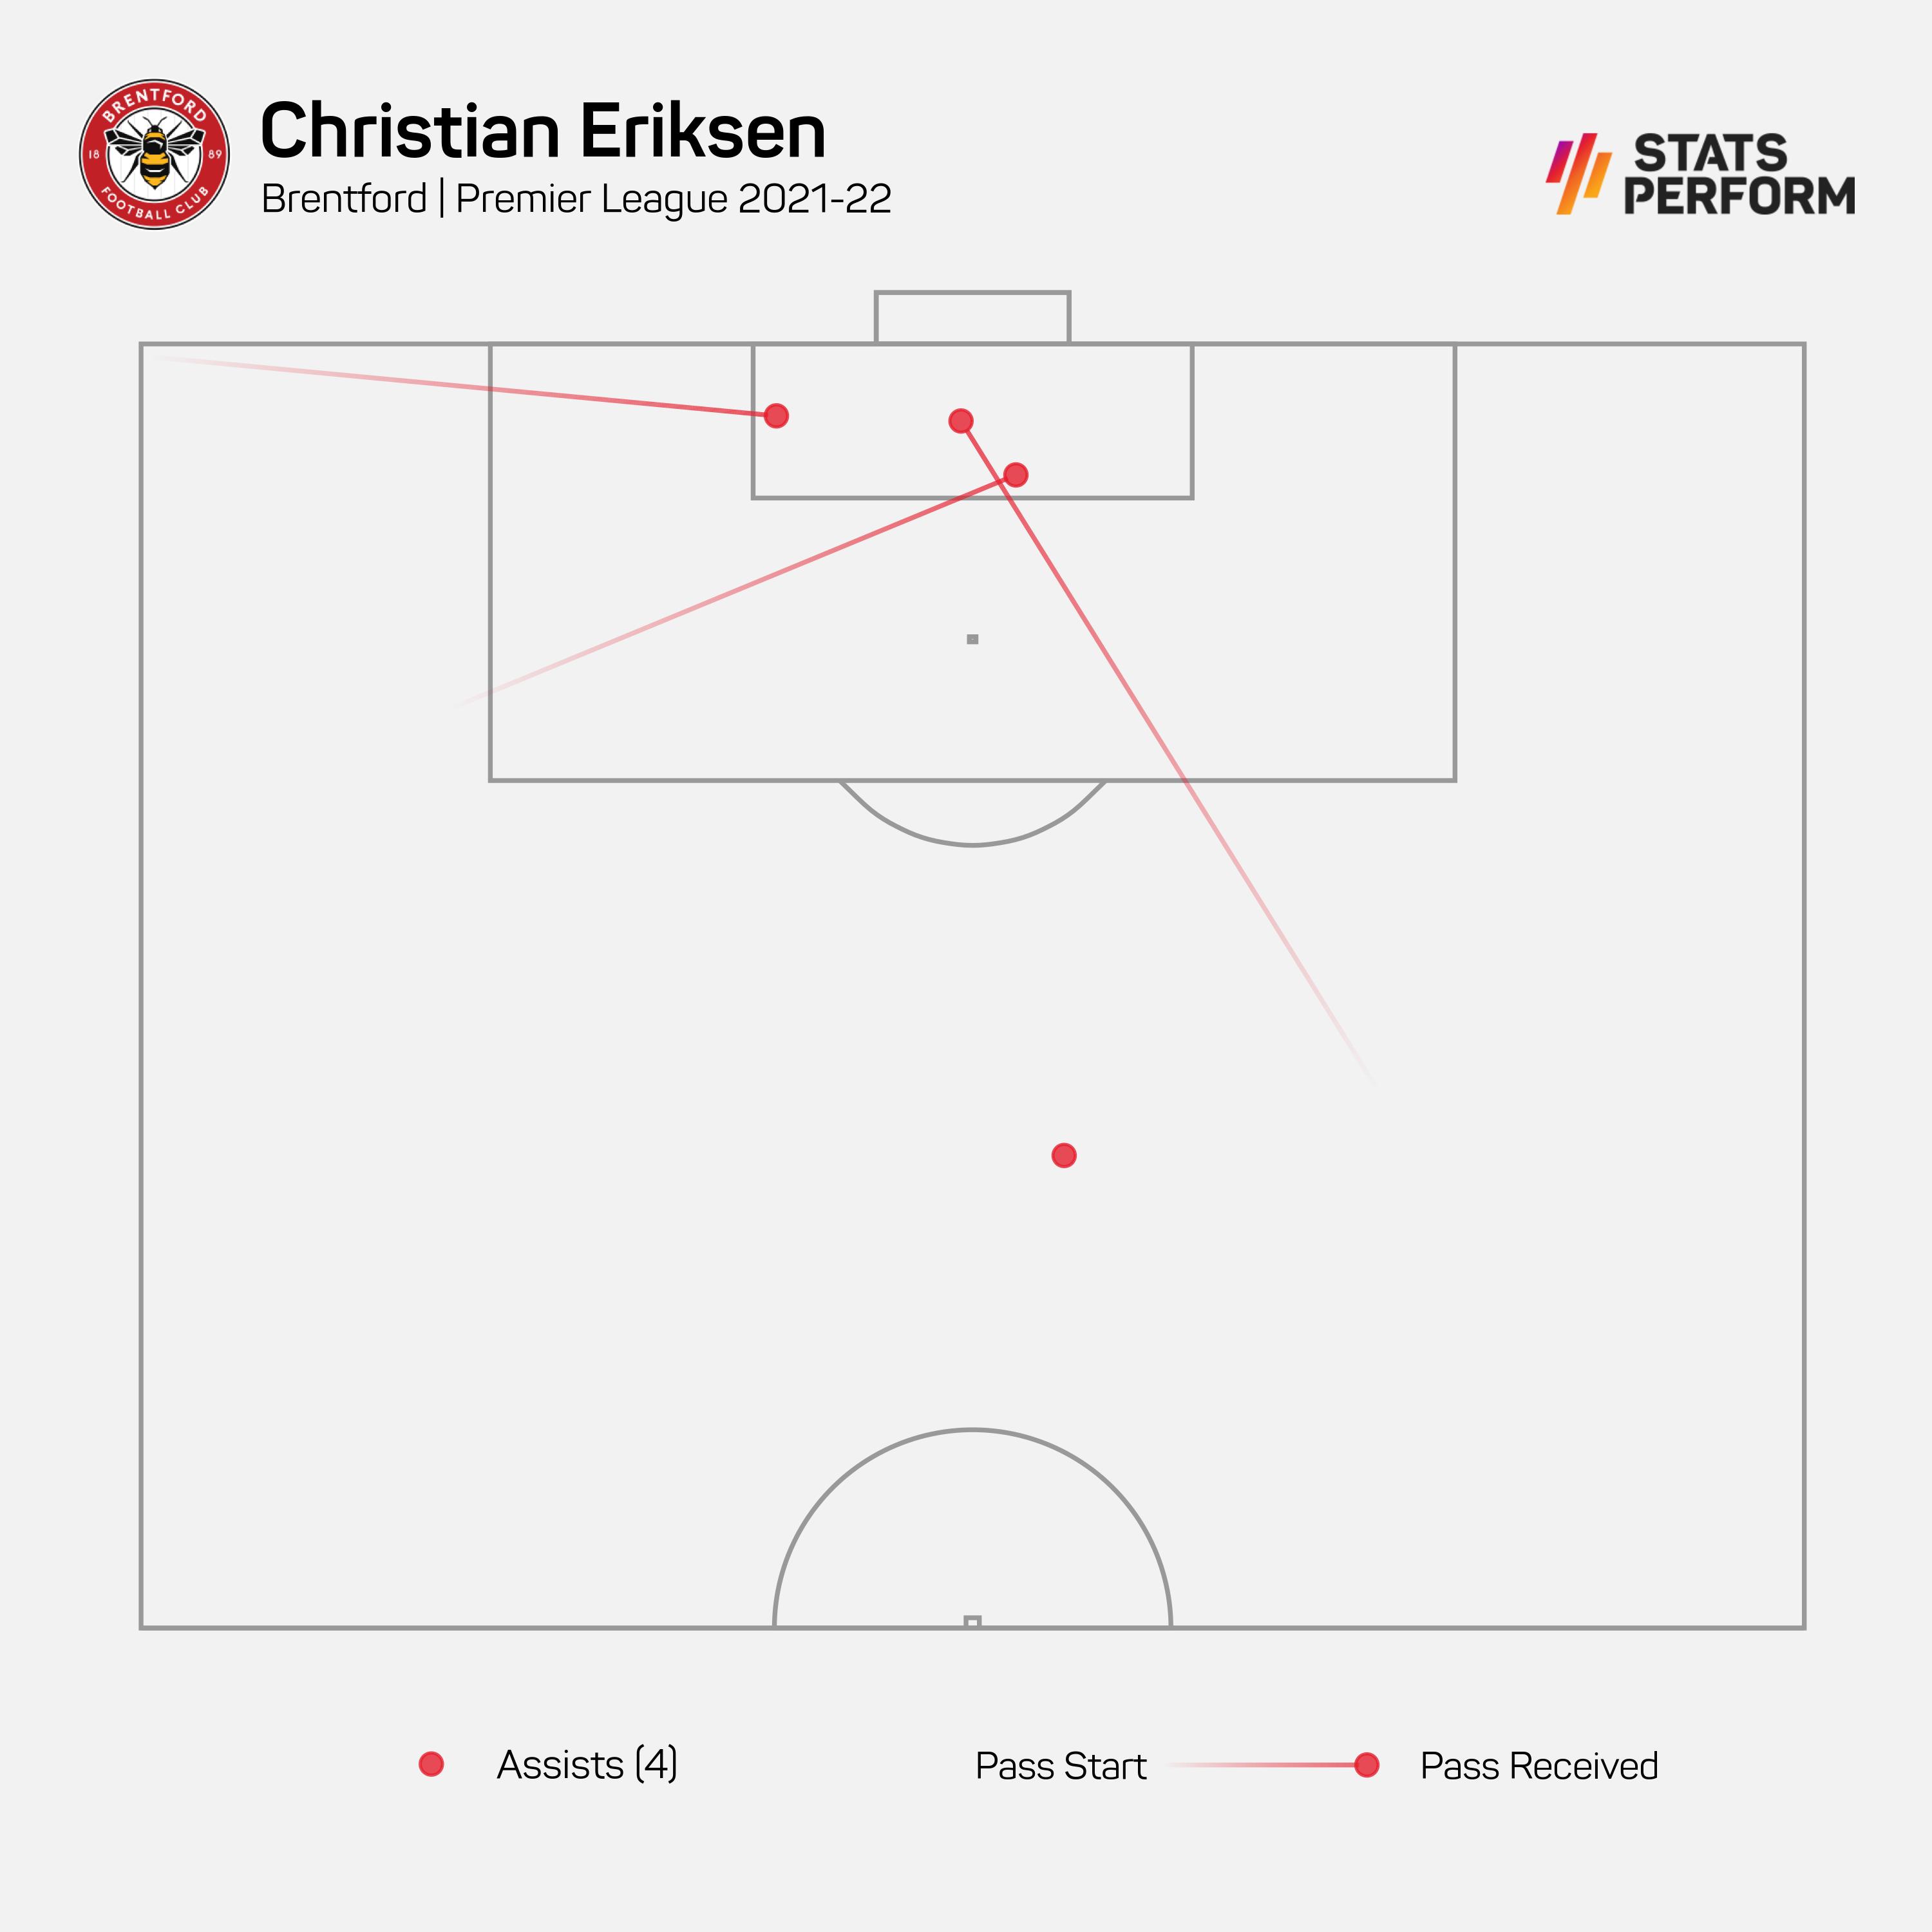 Christian Eriksen registered four Premier League assists last season